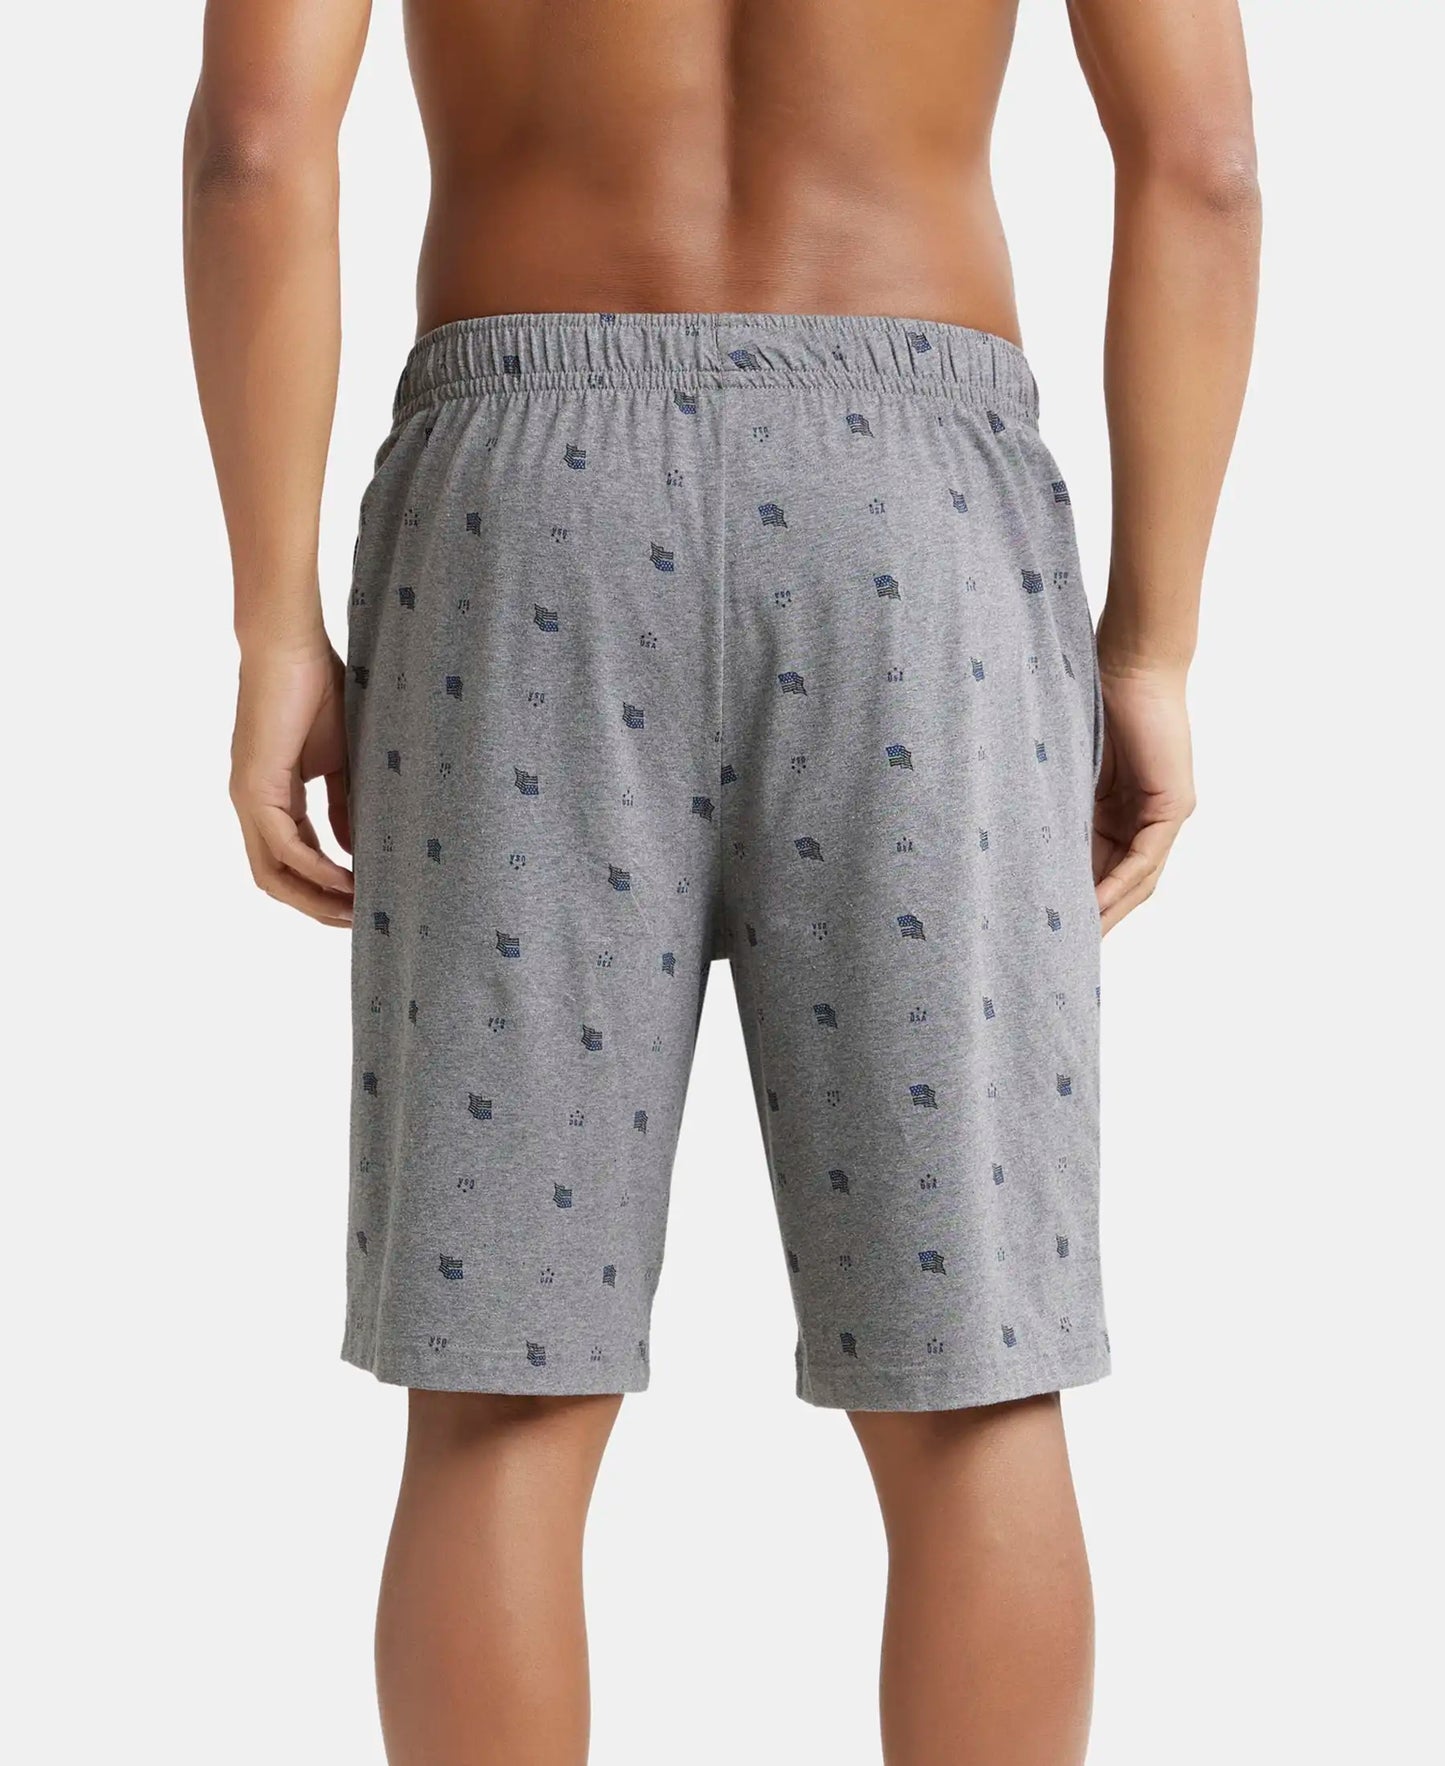 Super Combed Cotton Elastane Stretch Regular Fit Shorts with Side Pockets - Mid Grey Melange-3